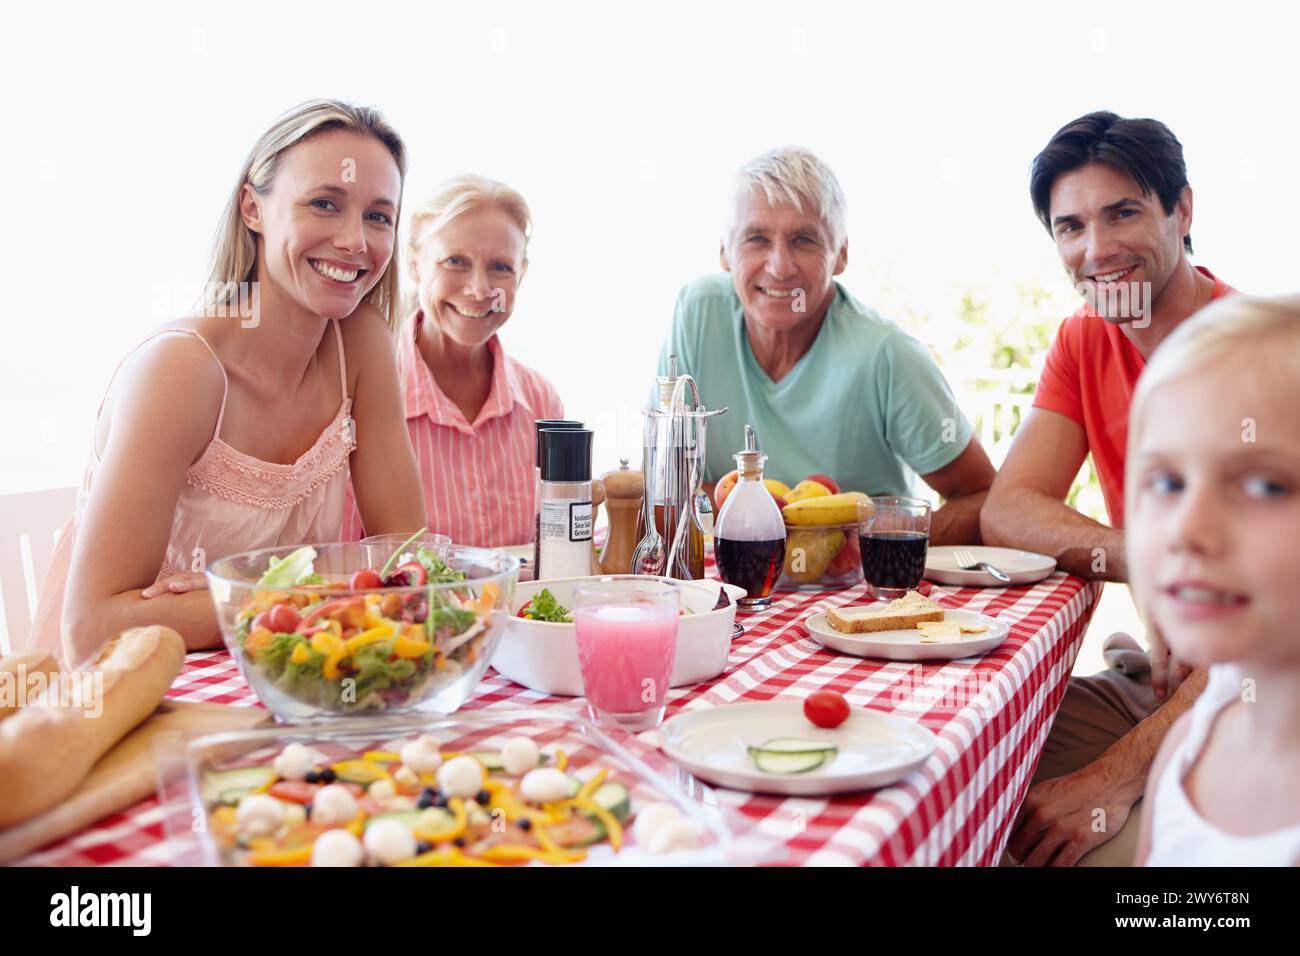 Porträt, Familie und junges Mädchen im Wohnzimmer am Tisch mit Salat, Gemüse und zusammen essen zum Mittagessen. Mom, Dad und Kind im Urlaub Stockfoto